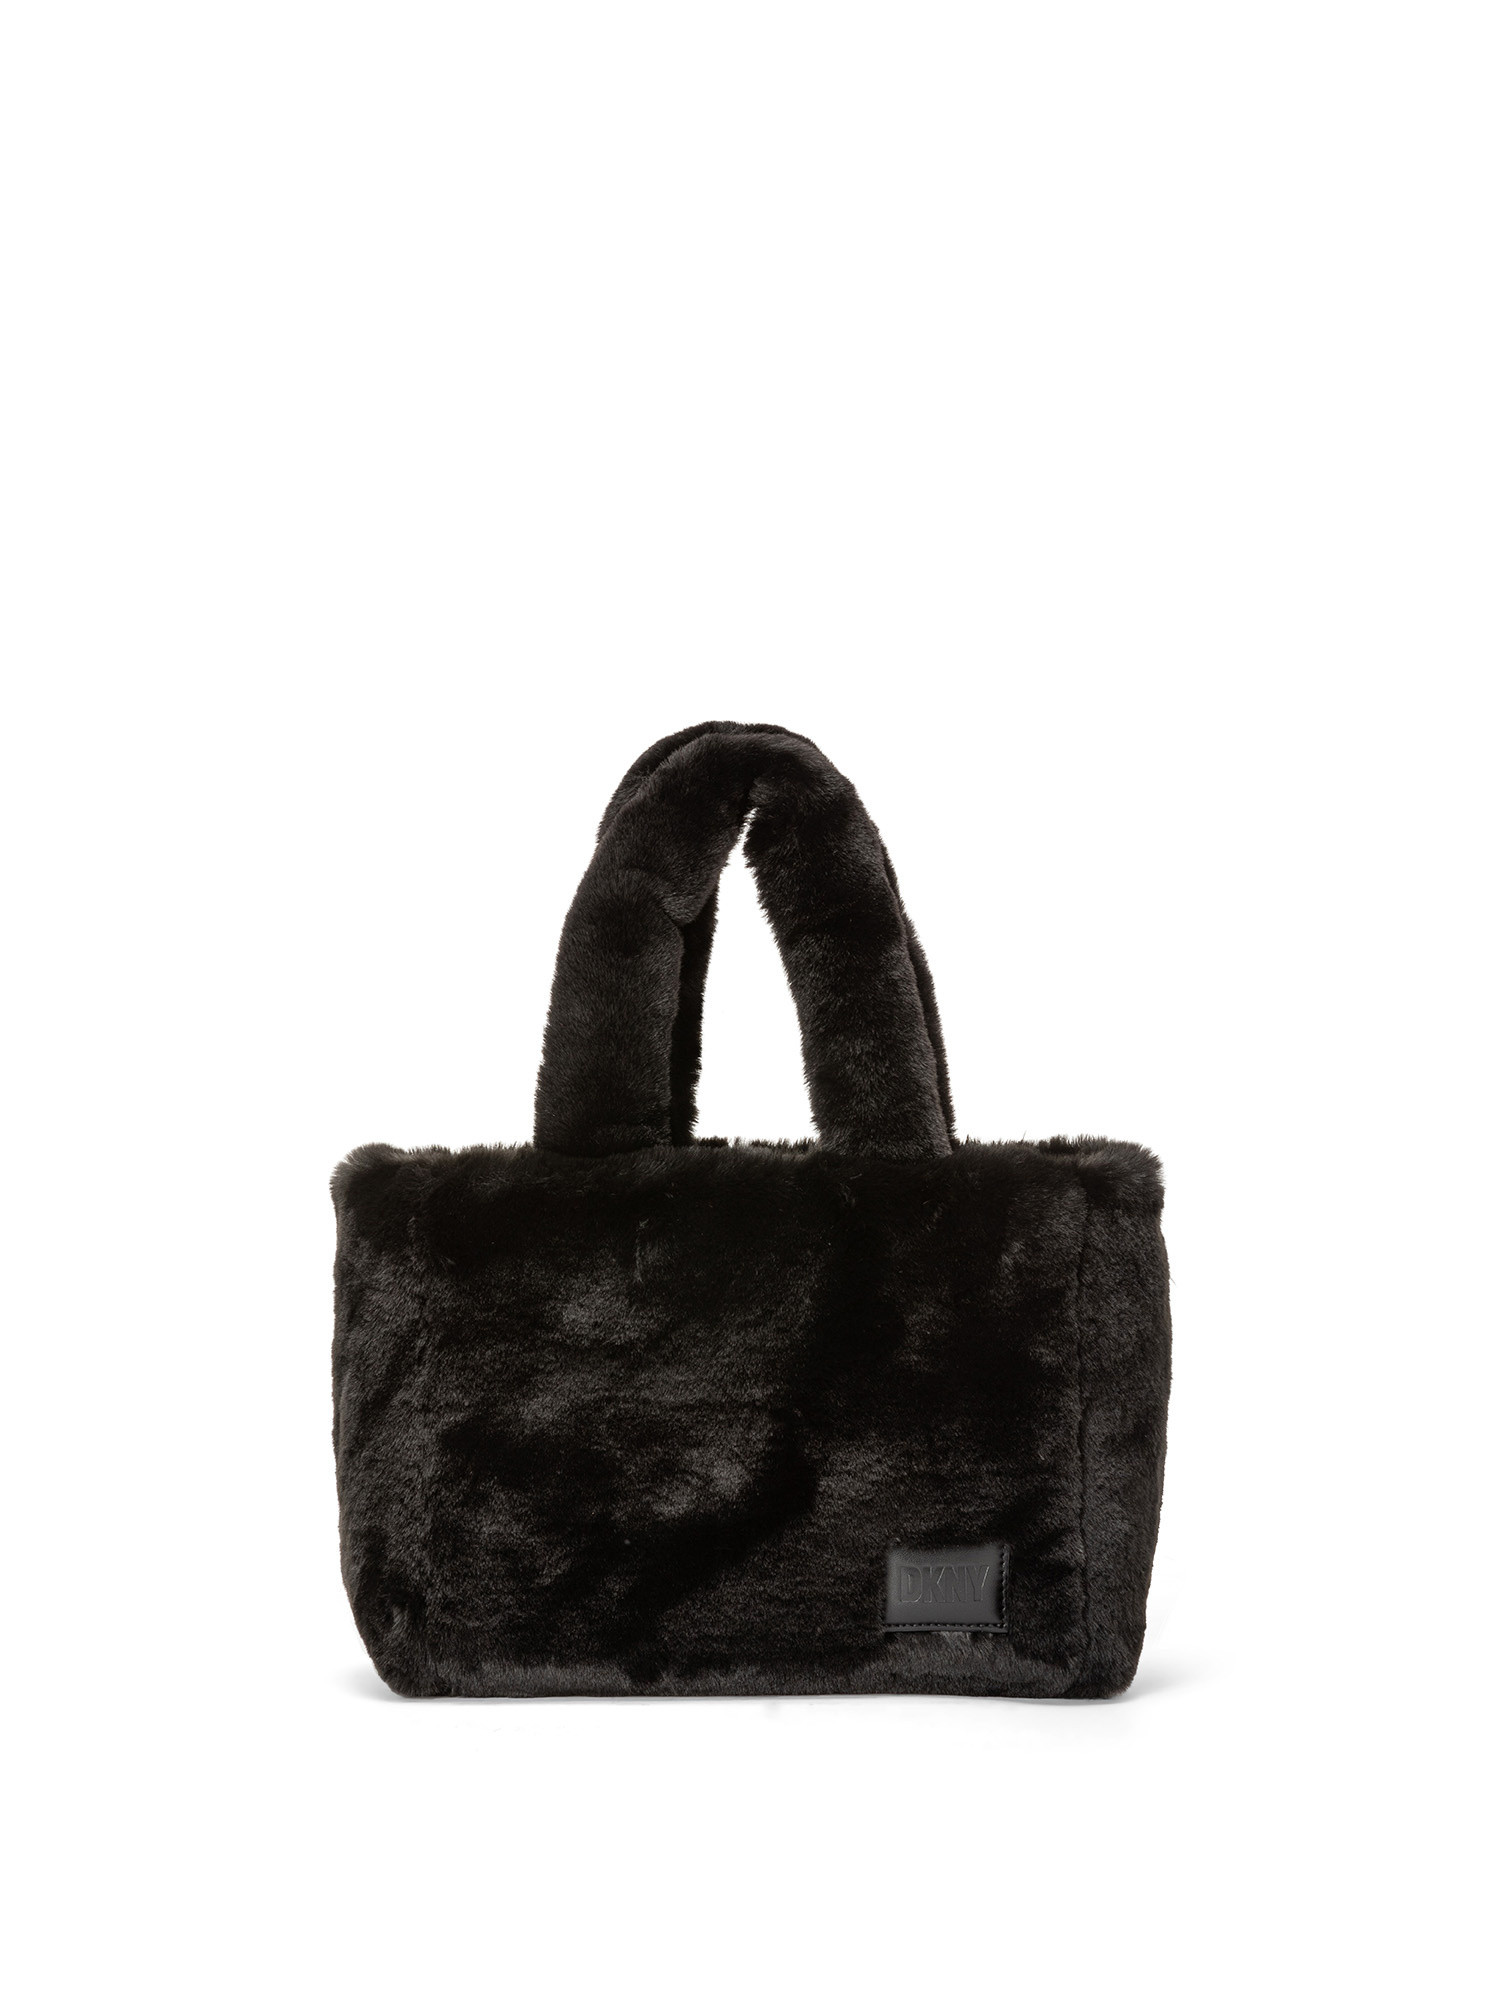 DKNY - Shoulder bag, Black, large image number 0